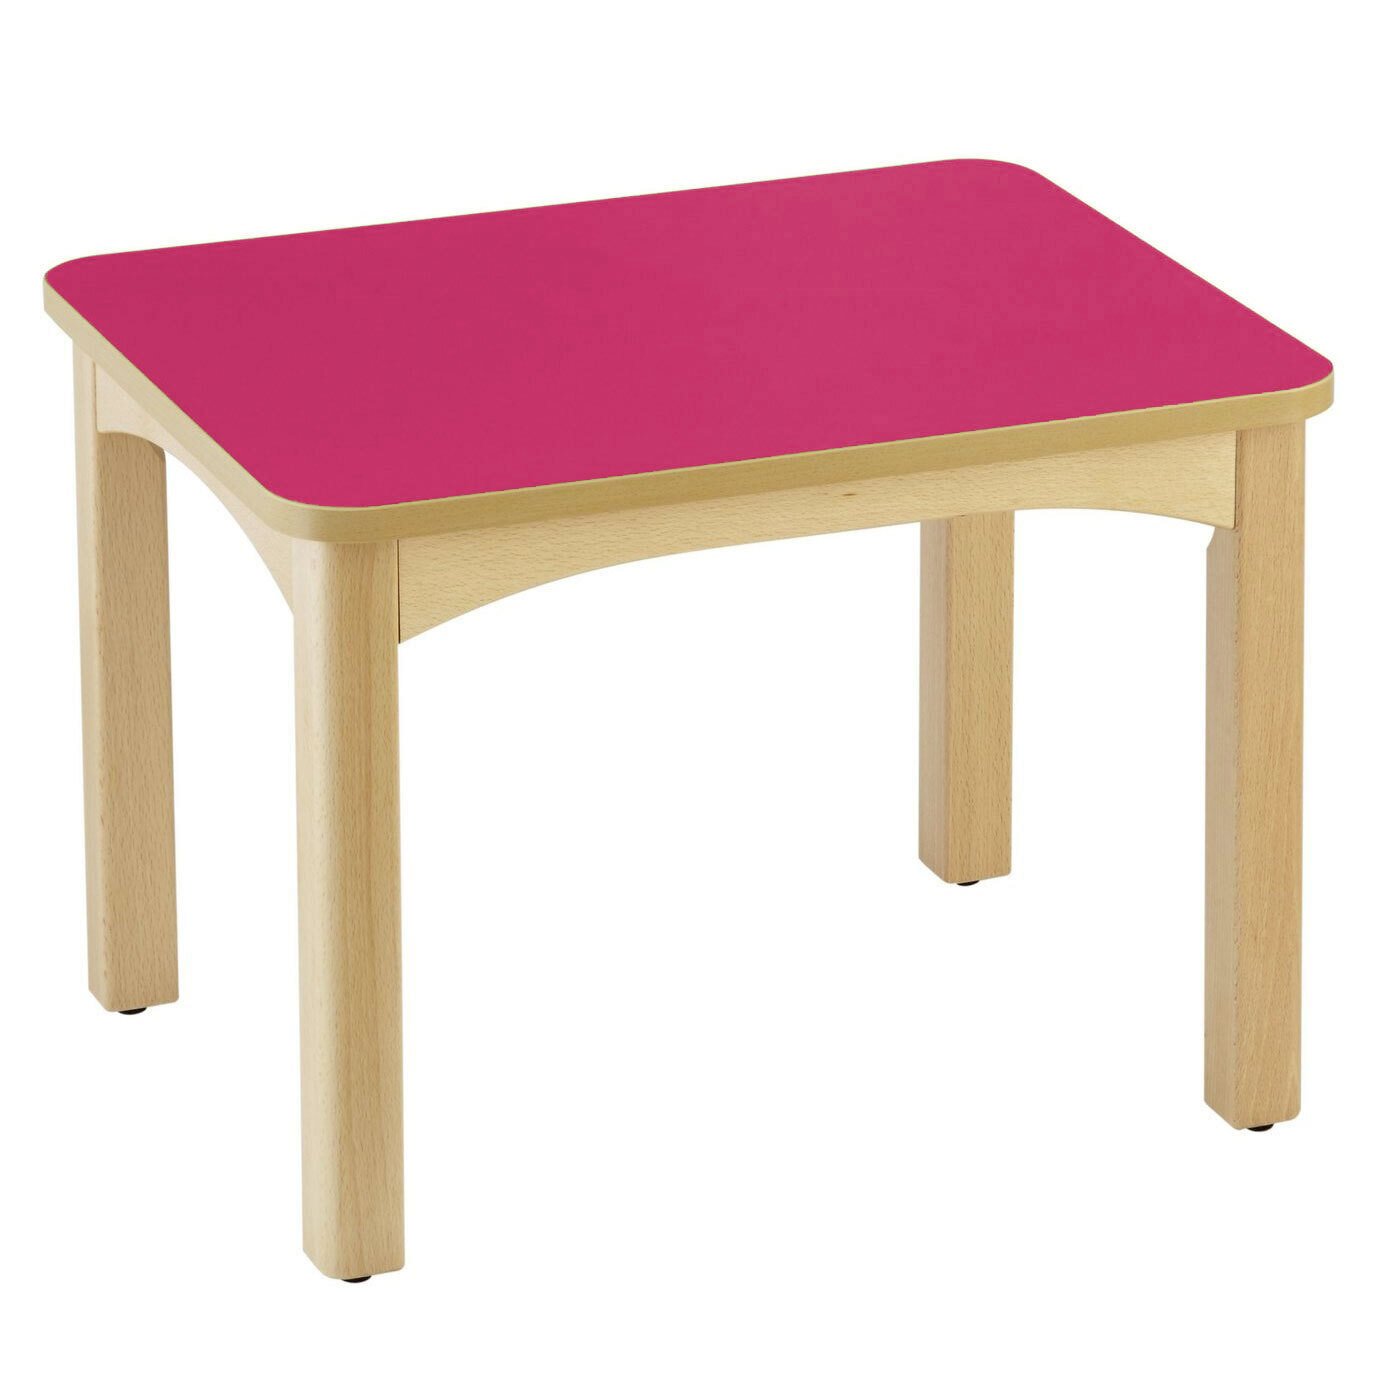 Table en bois pour crèche 60 x 50 cm t1 framboise